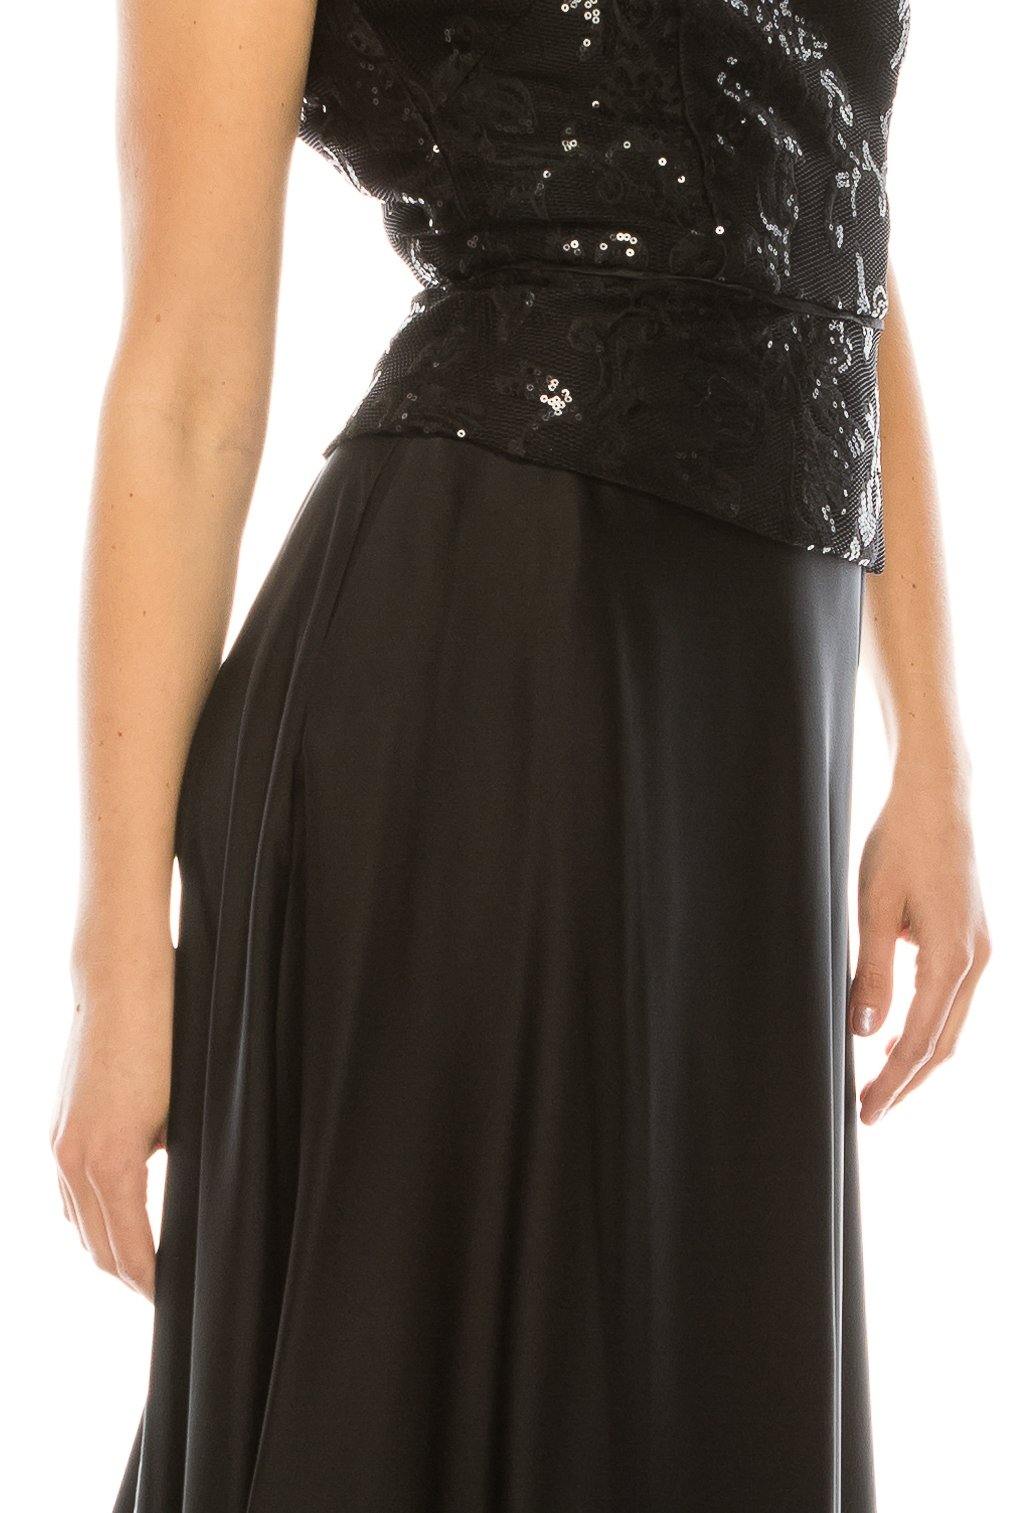 Aidan Mattox Long Formal Sleeveless Peplum Dress - The Dress Outlet